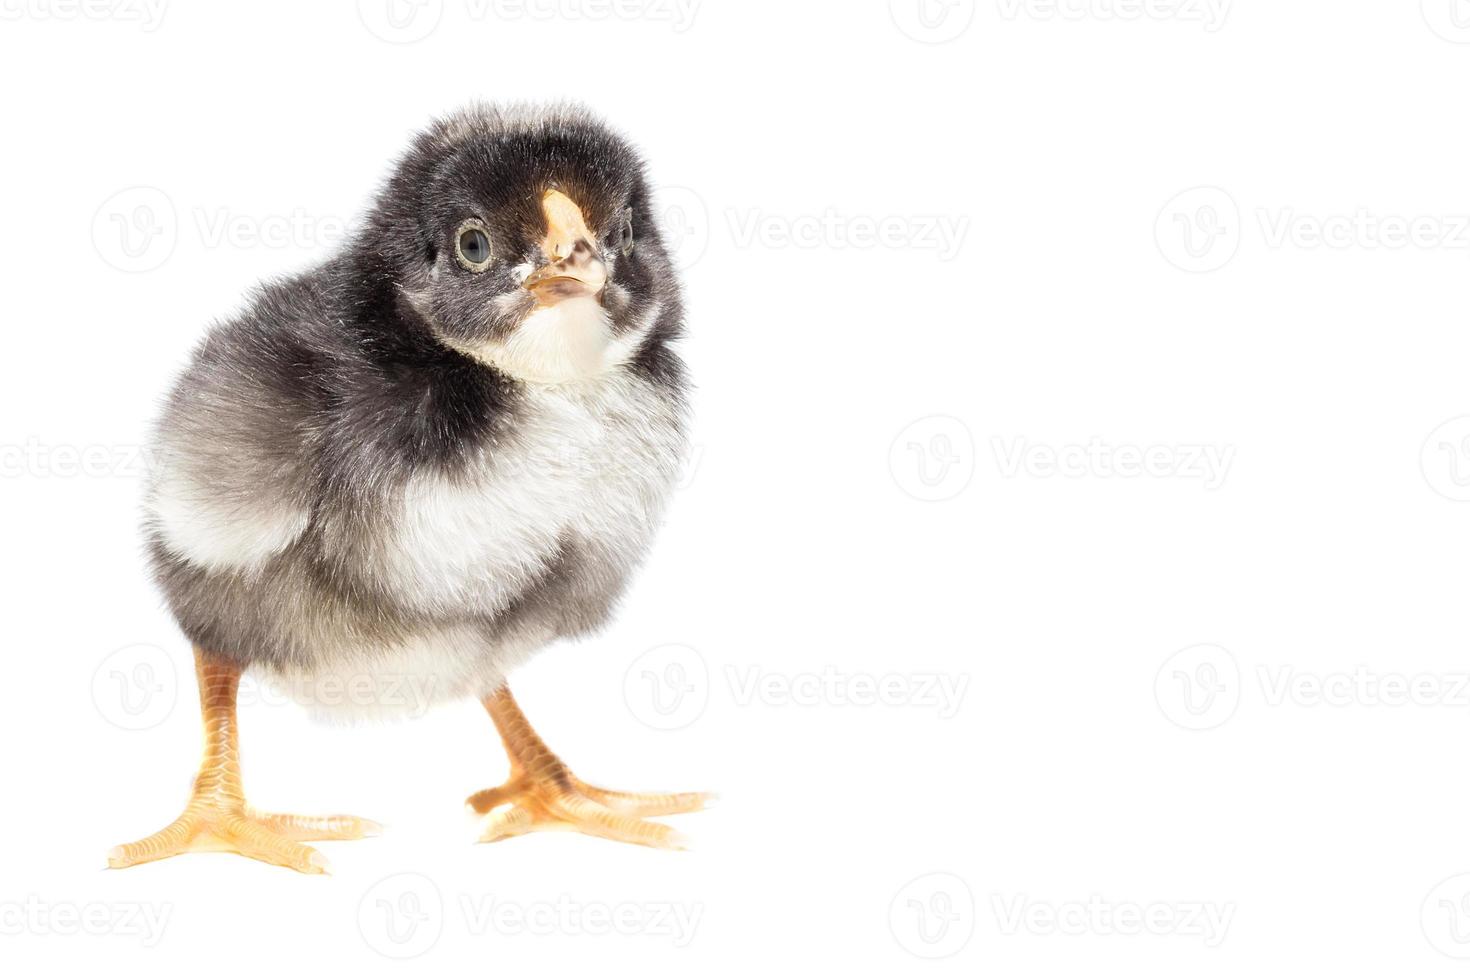 kyckling på vit bakgrund foto